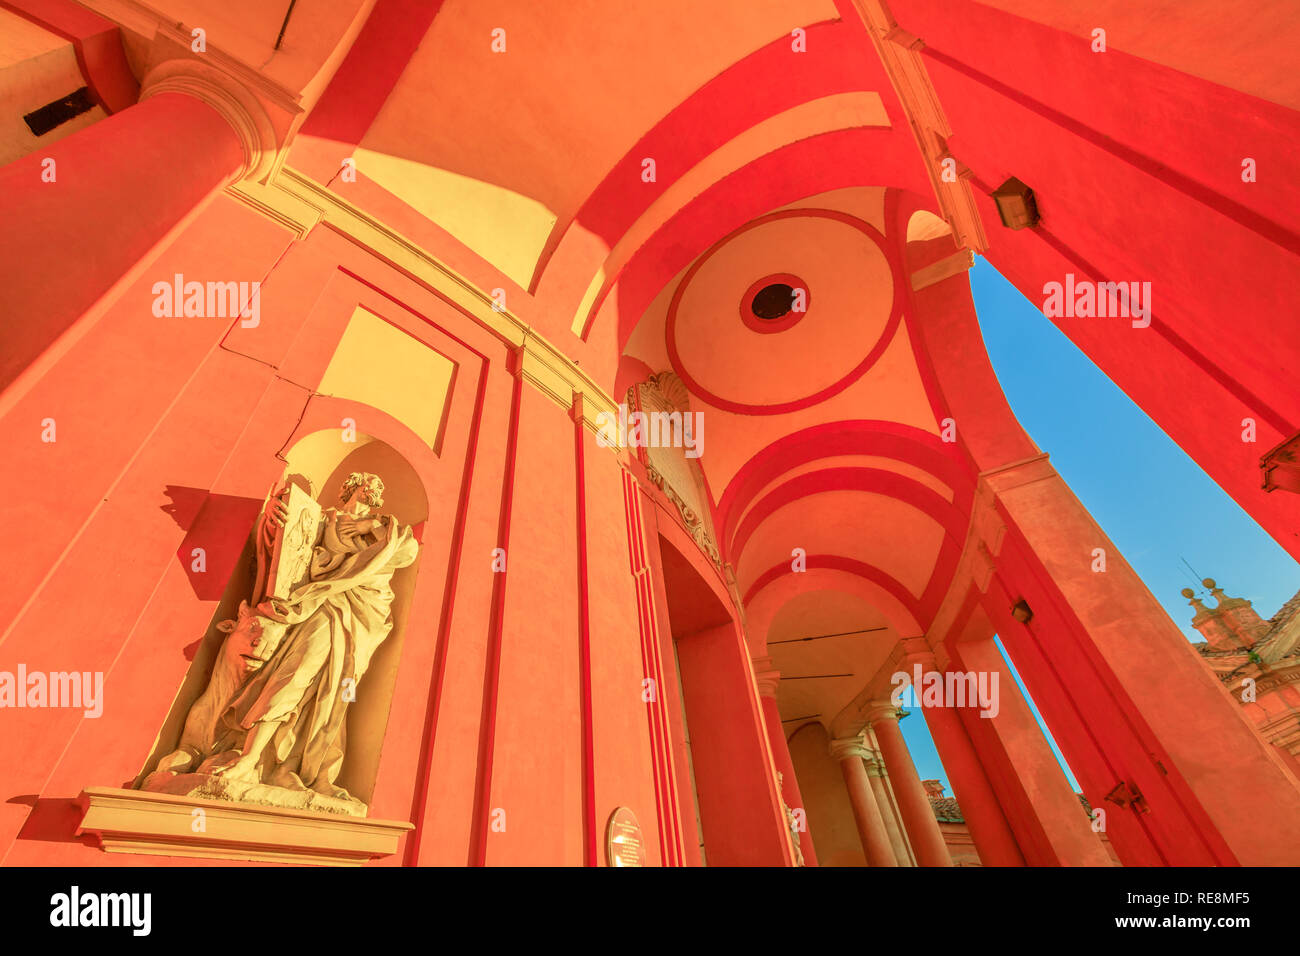 Bologne, Italie - 12 janvier 2018 : Vue de dessous de la statue de l'évangéliste Luc avec bull sous les arcades de sanctuaire de la Madonna di San Luca, ancienne église historique de Sainte Vierge. Banque D'Images